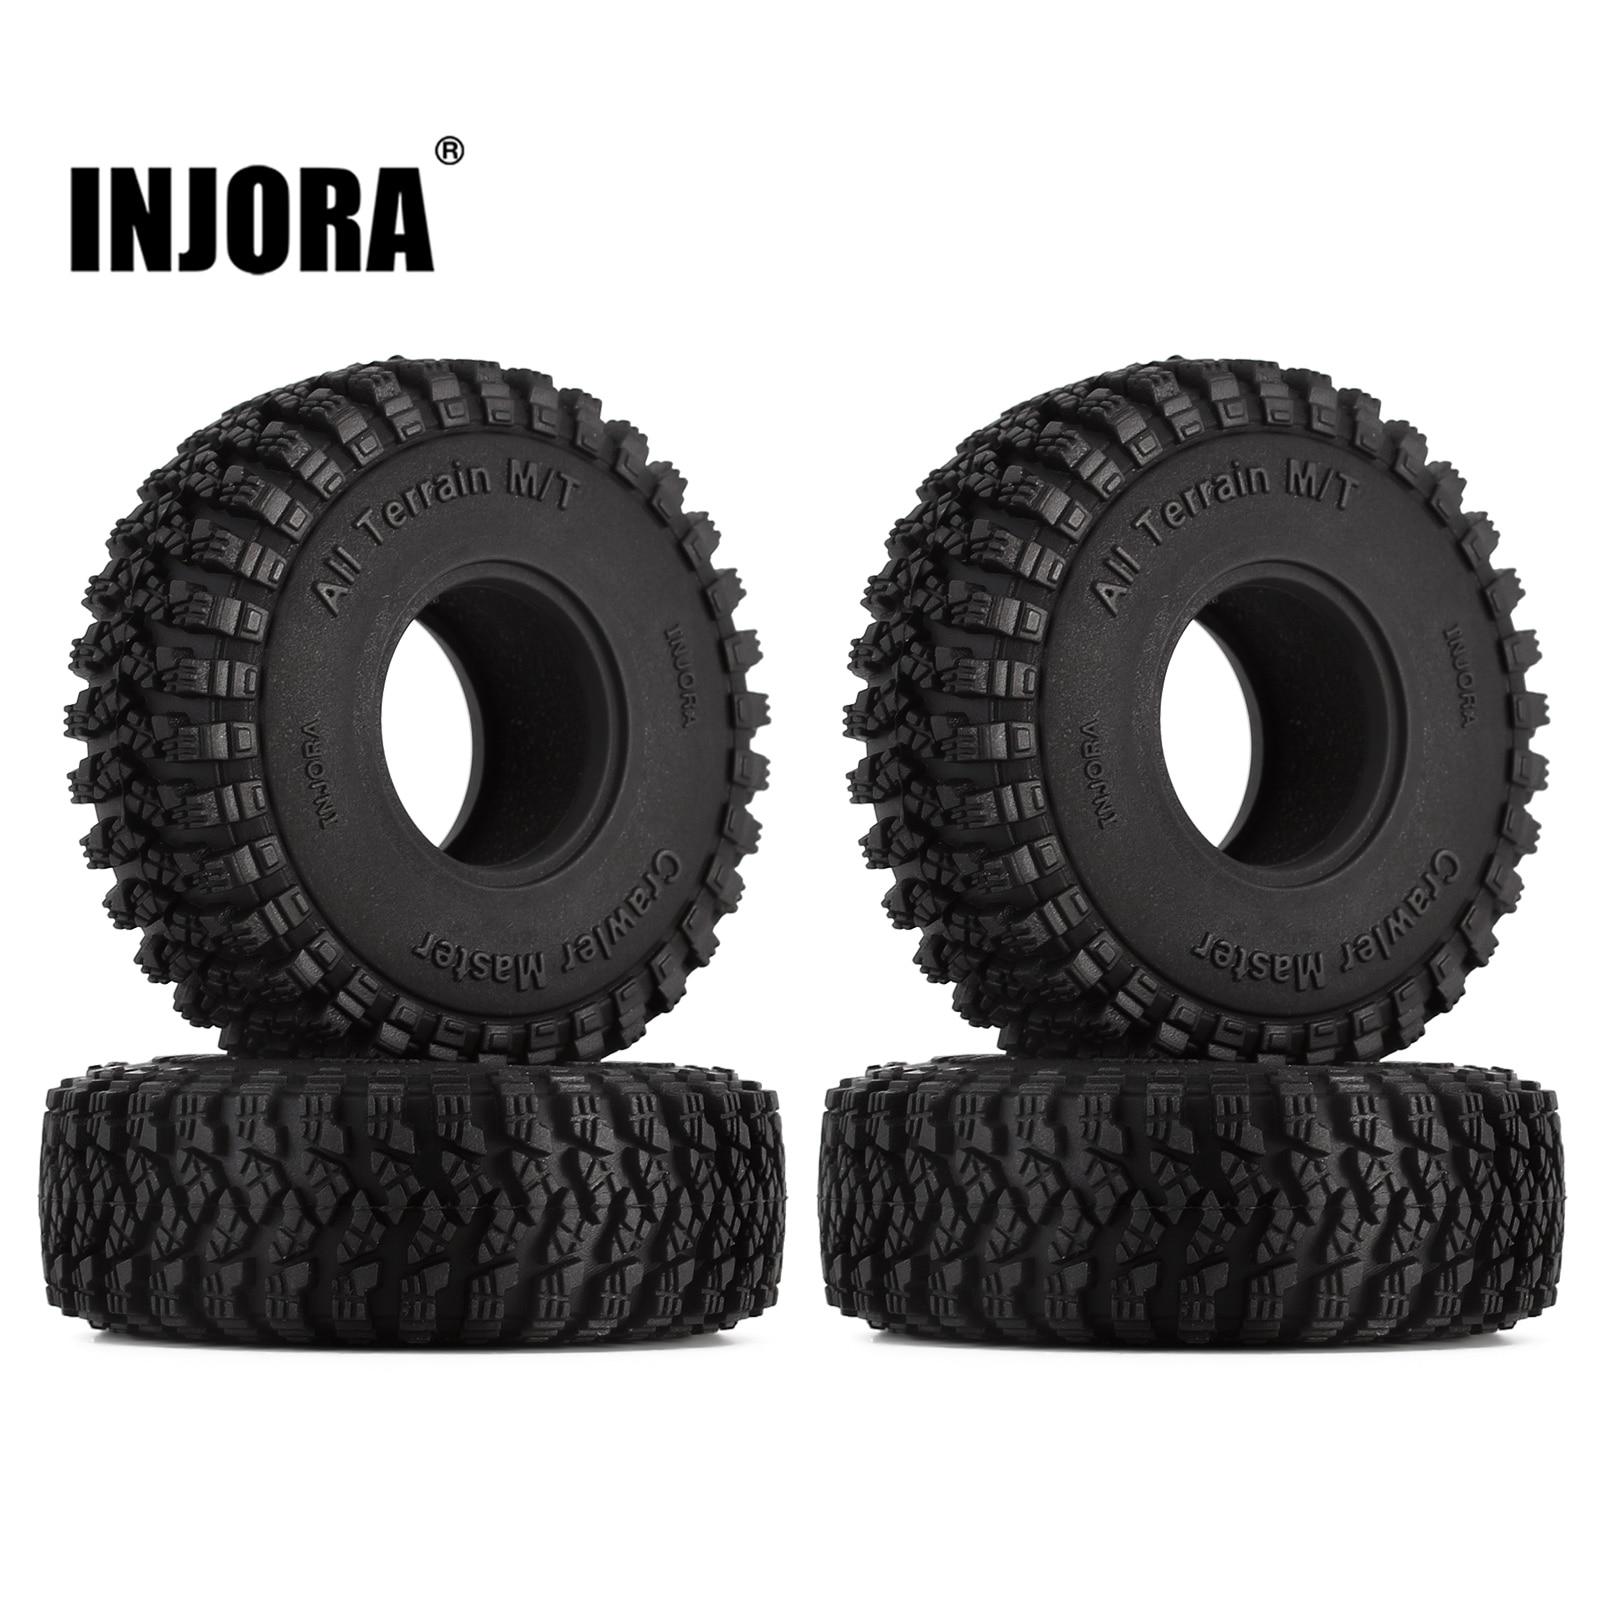 INJORA-1-0-Wheel-Tires-All-Terrain-58-20mm-Upgrade-for-1-18-1-24-RC.jpg